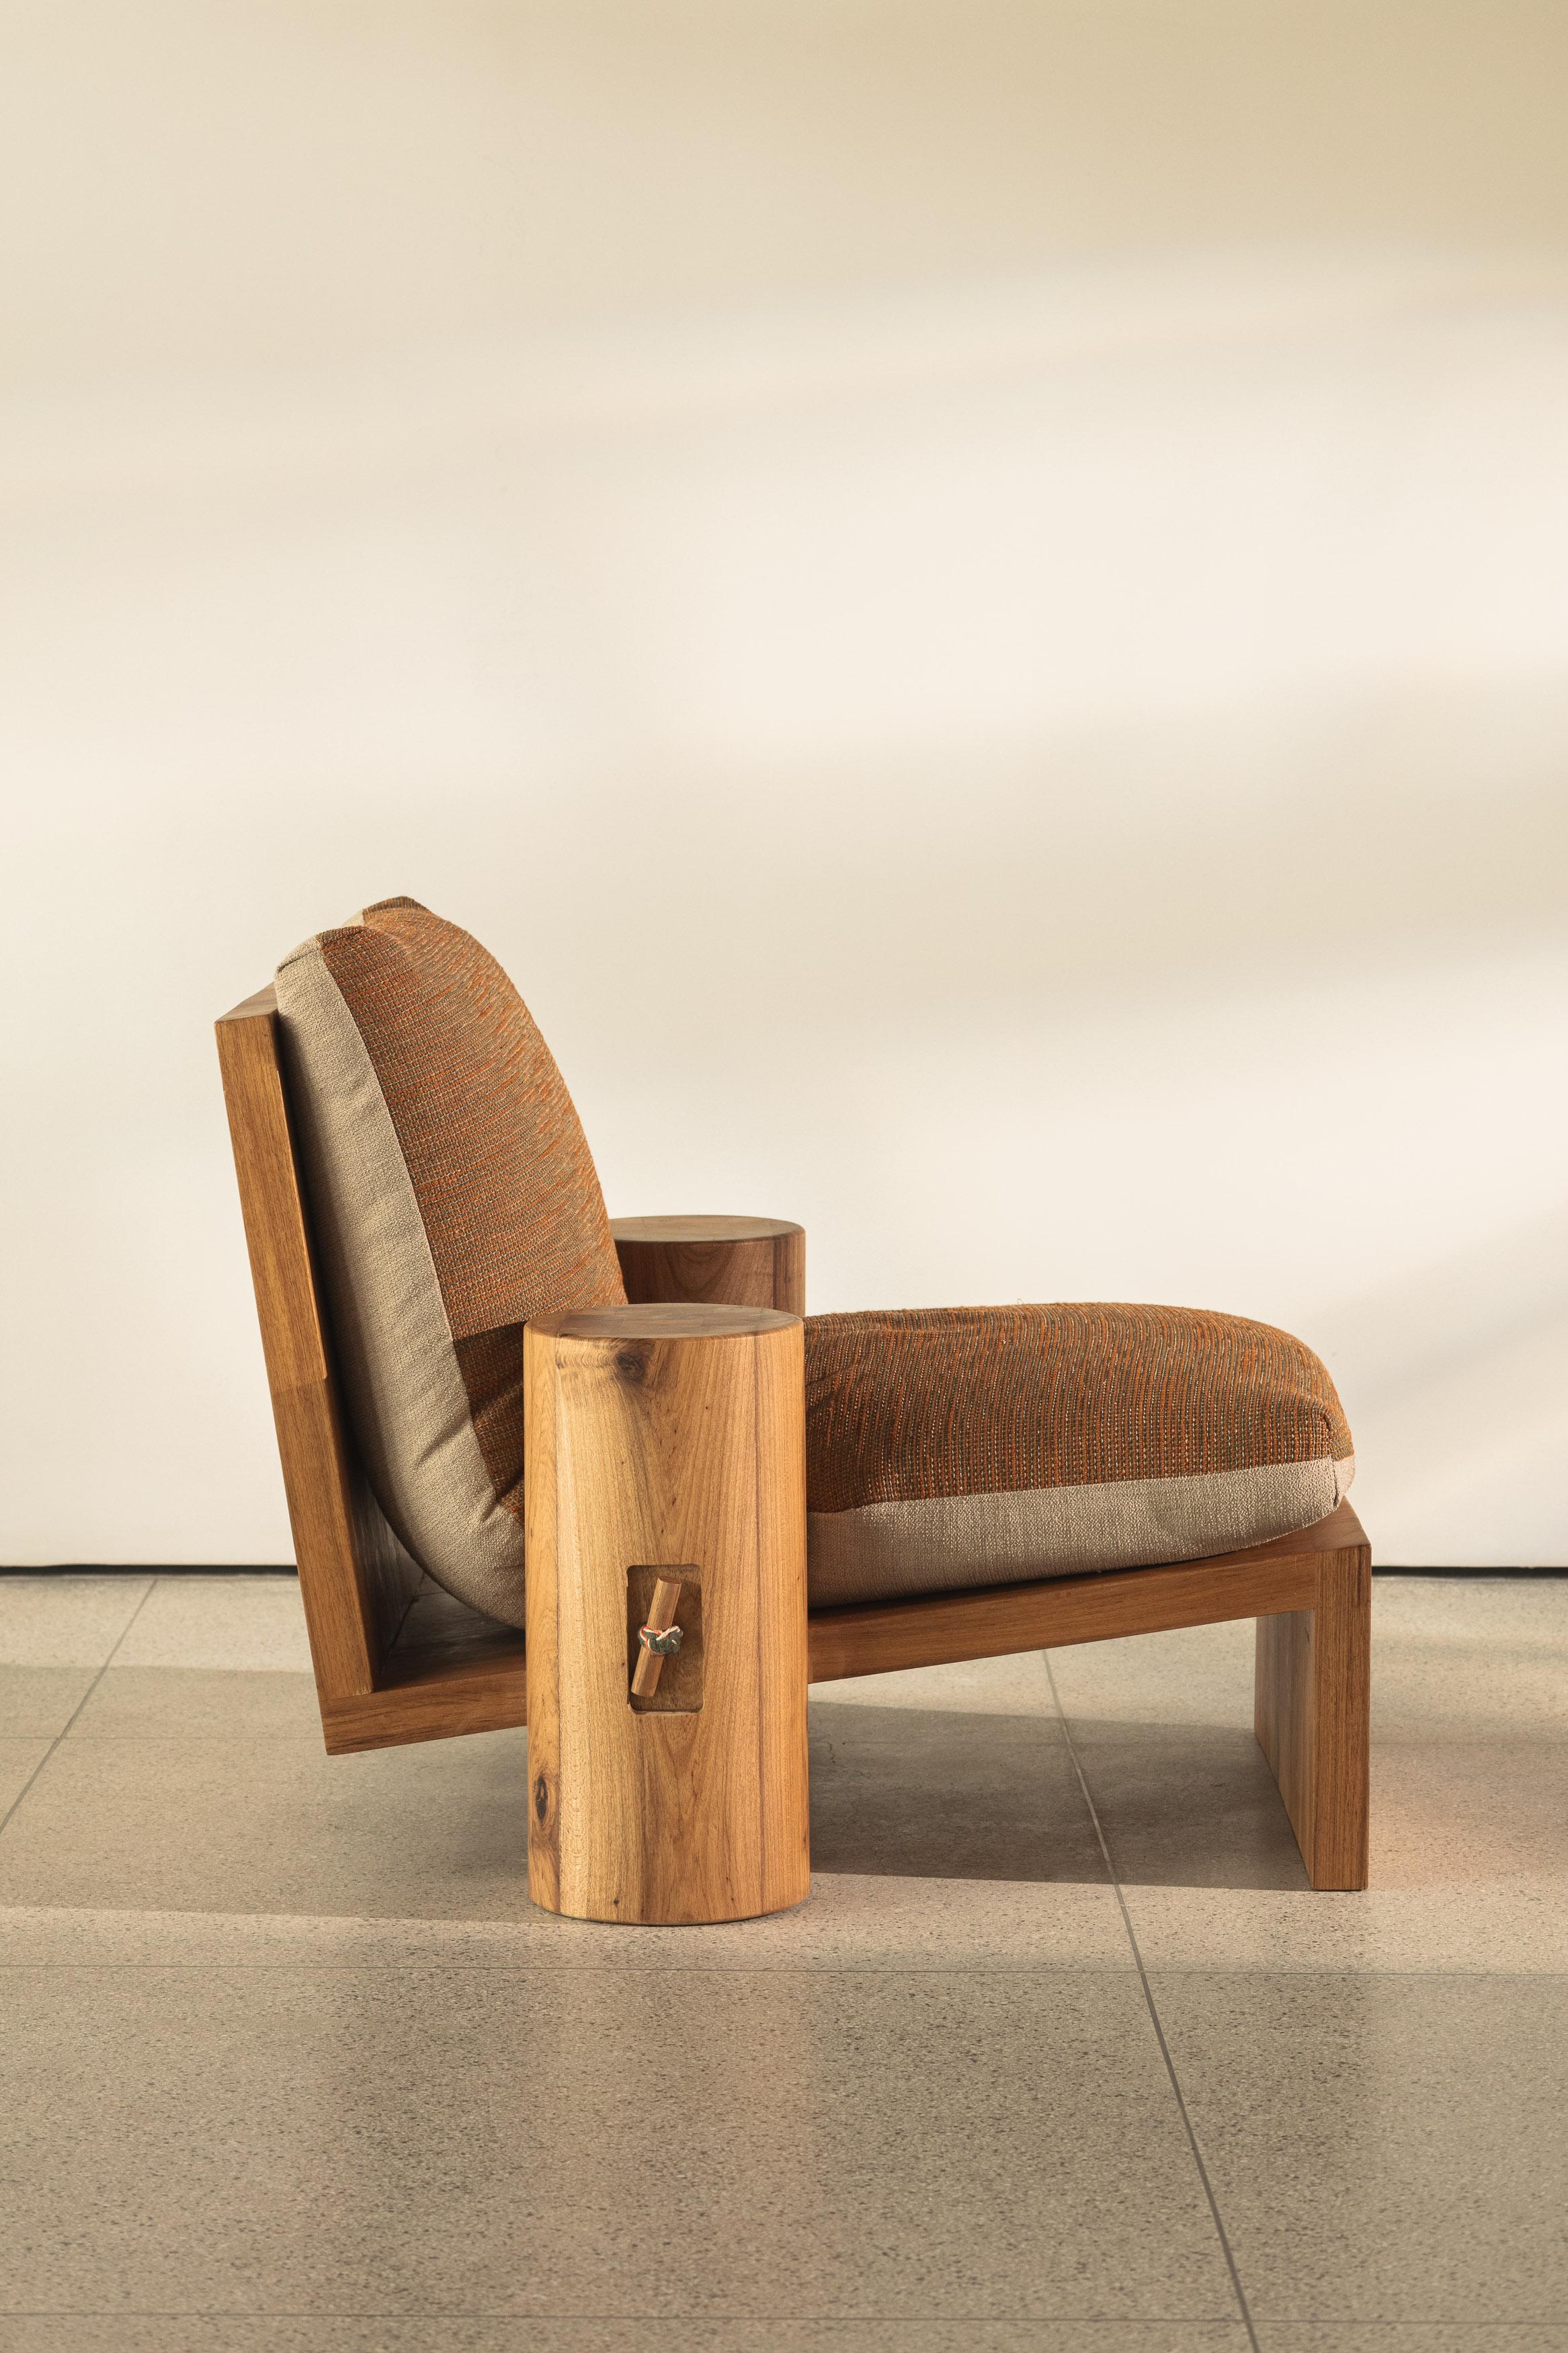 Le fauteuil Cais s'inspire du design vernaculaire traditionnel des quais en bois situés au bord de l'eau.

Le grand coussin est solidement placé entre deux cylindres en bois, une corde traversant l'ensemble de la pièce d'un côté à l'autre. Cette